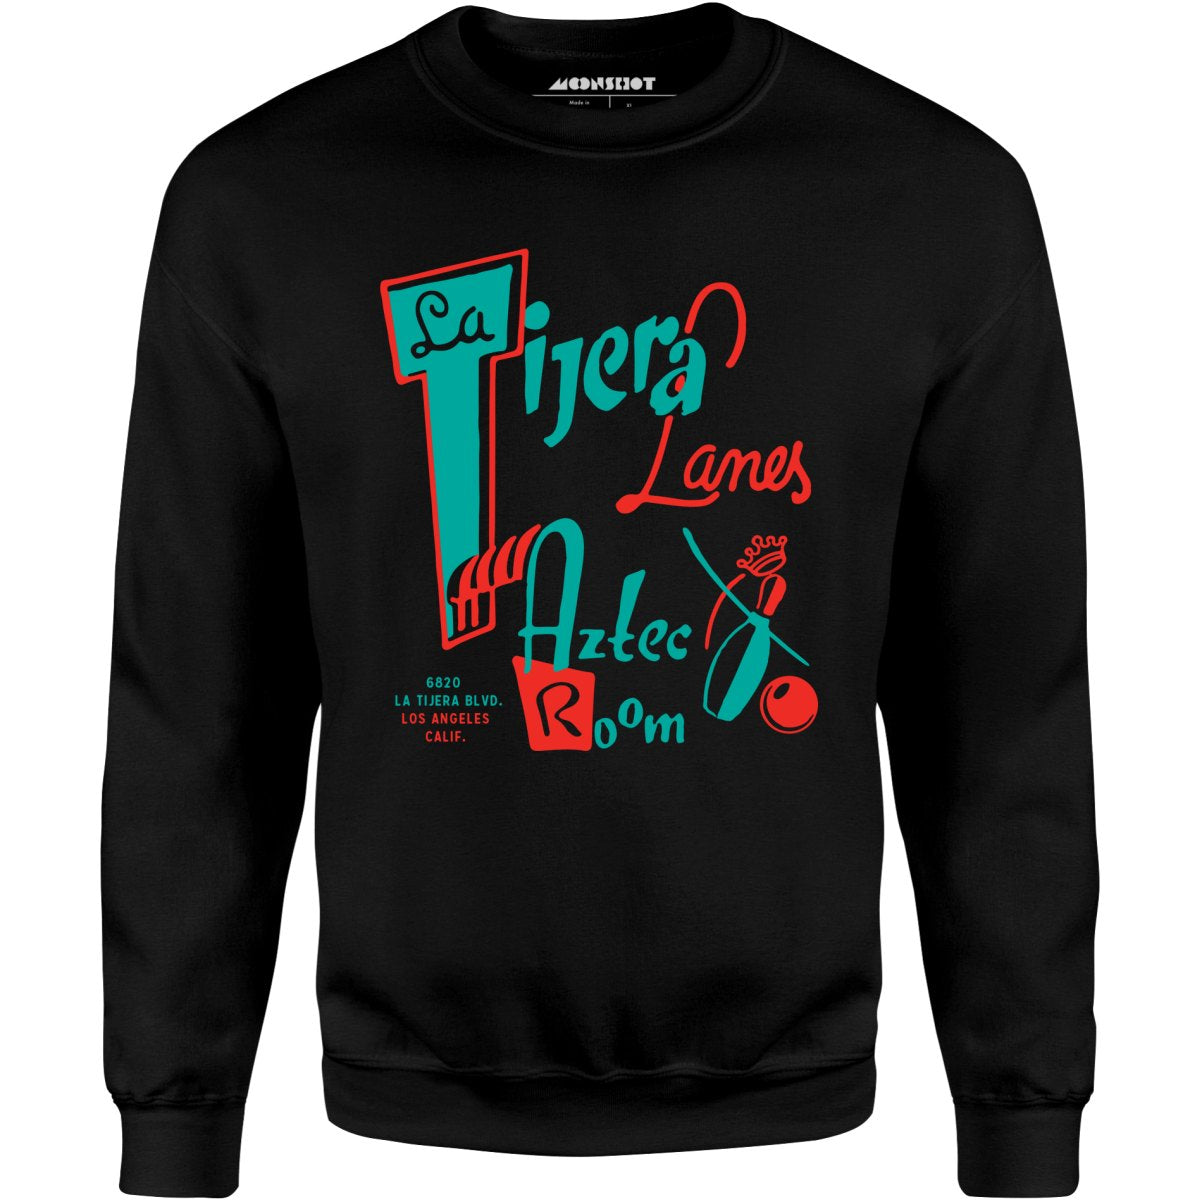 La Tijera Lanes - Los Angeles, CA - Vintage Bowling Alley - Unisex Sweatshirt